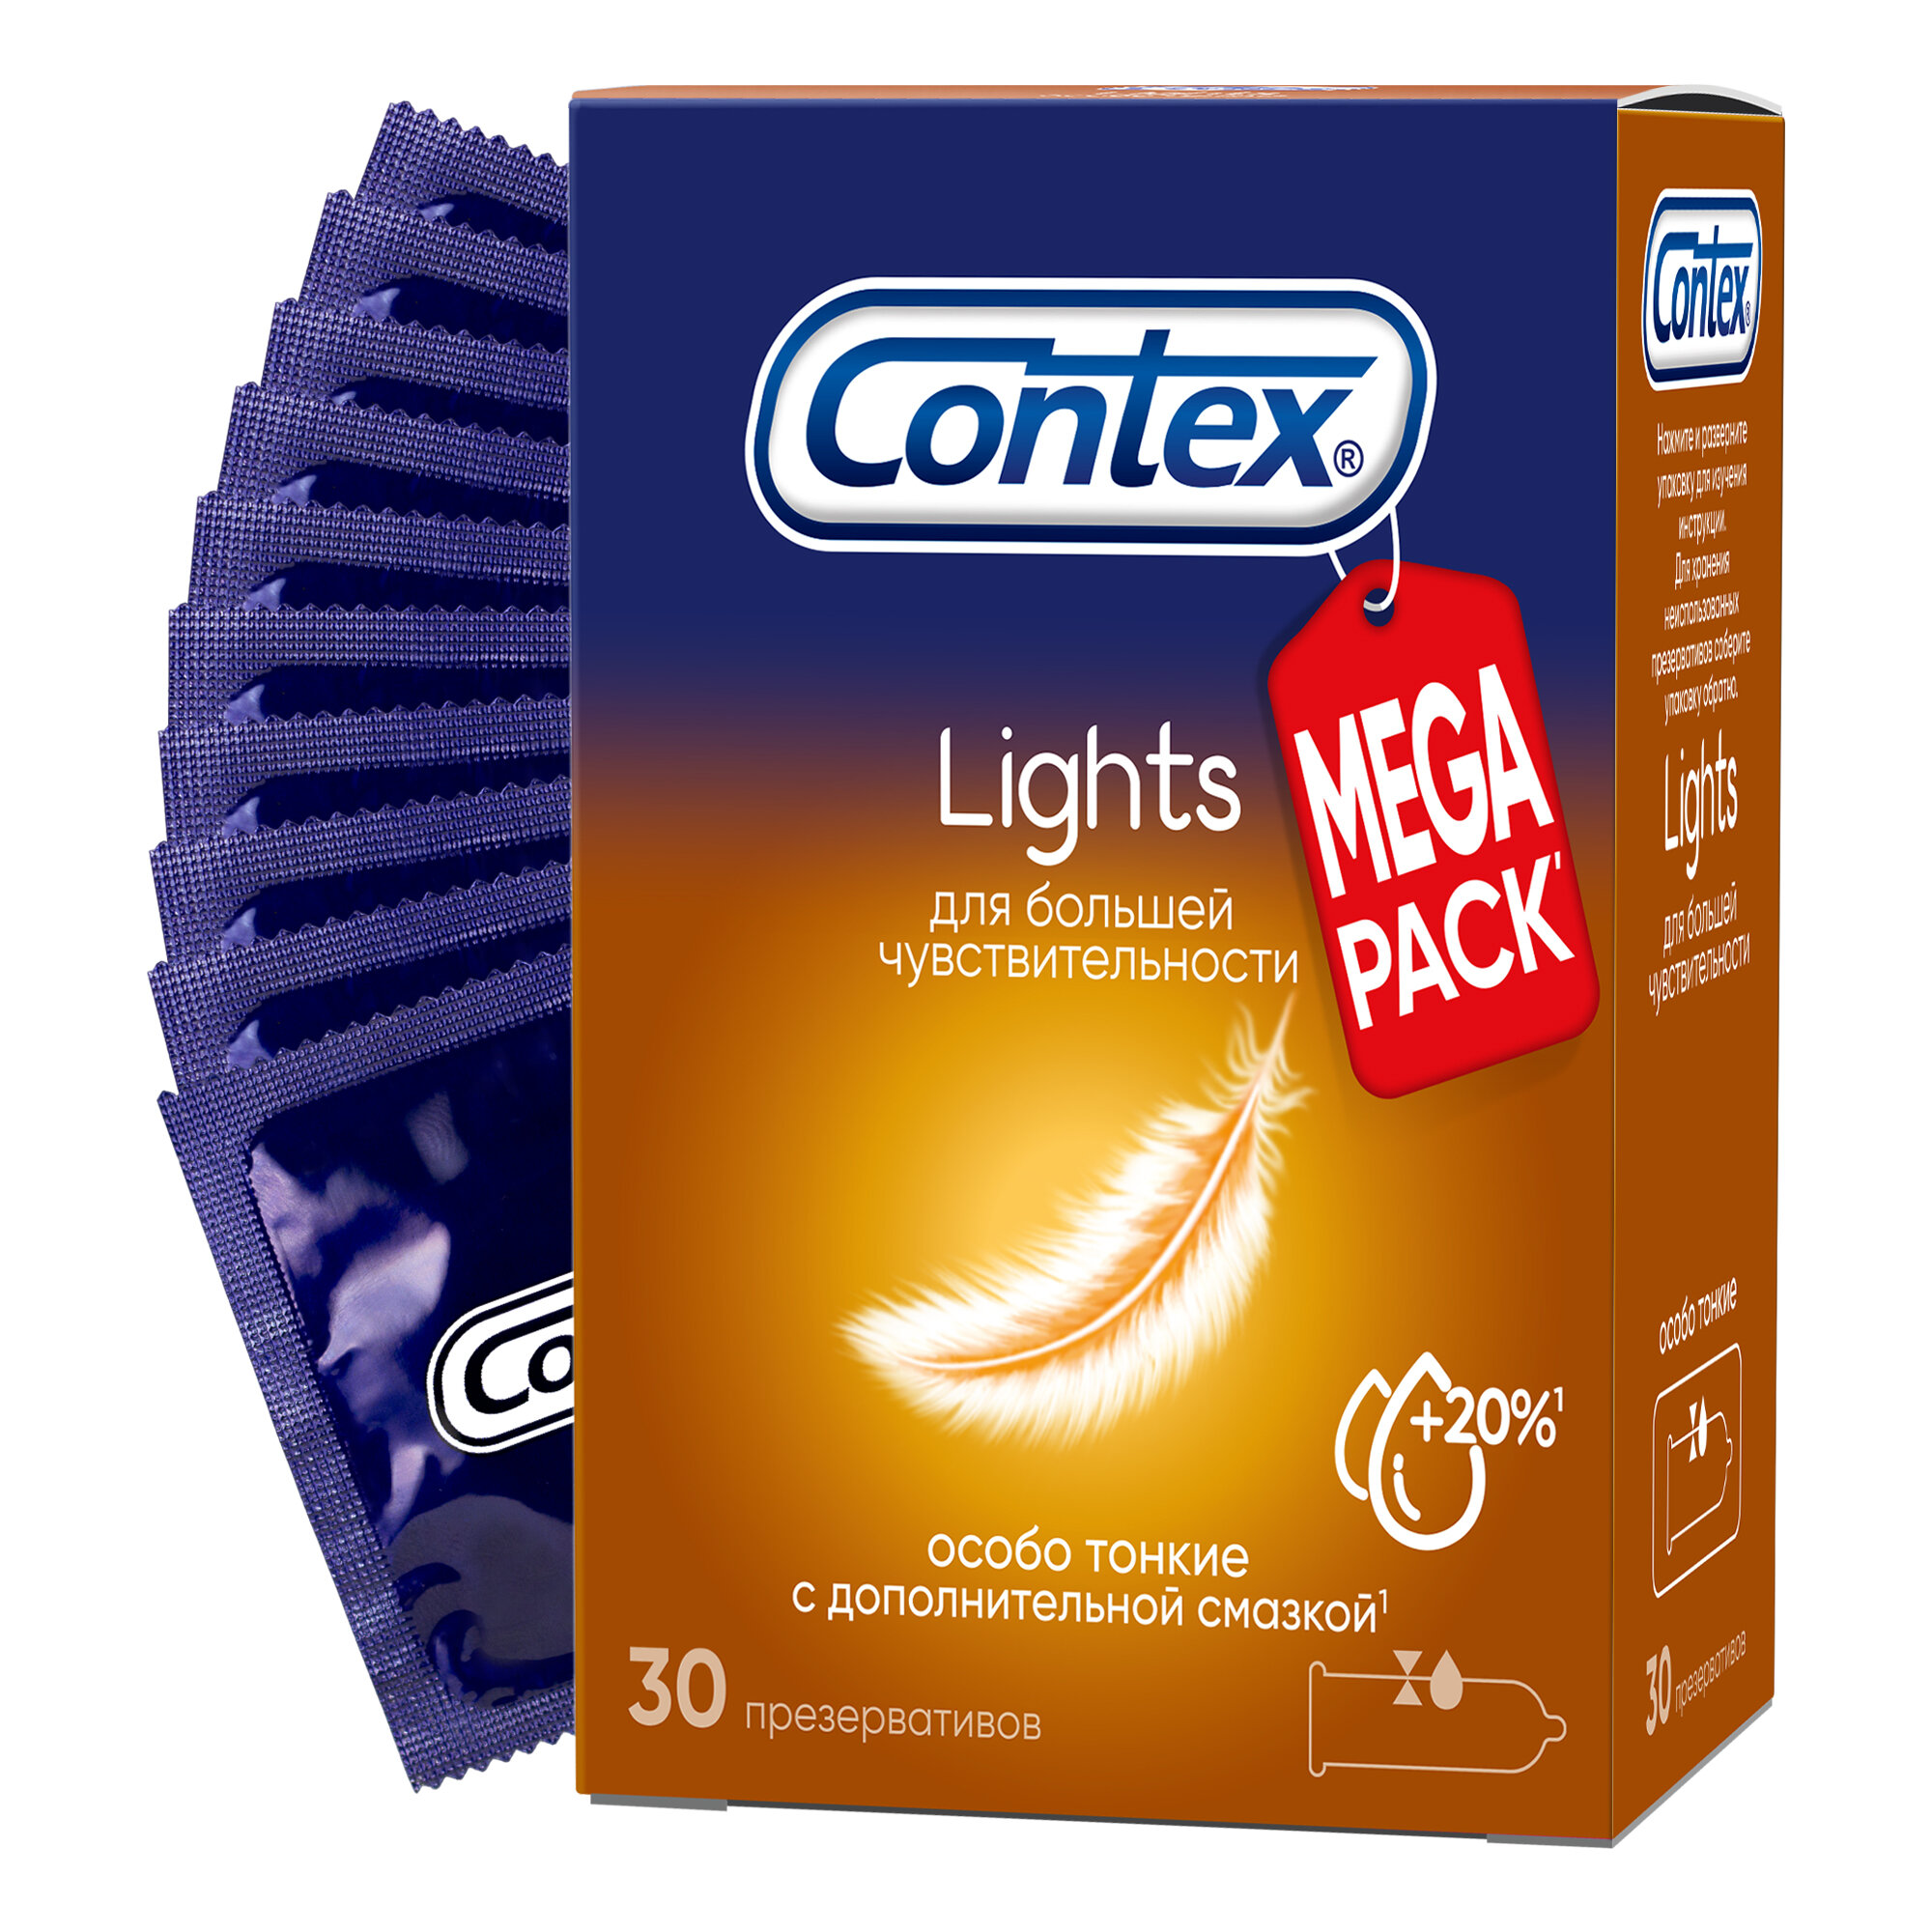 Презервативы Contex Lights особо тонкие 30 шт.